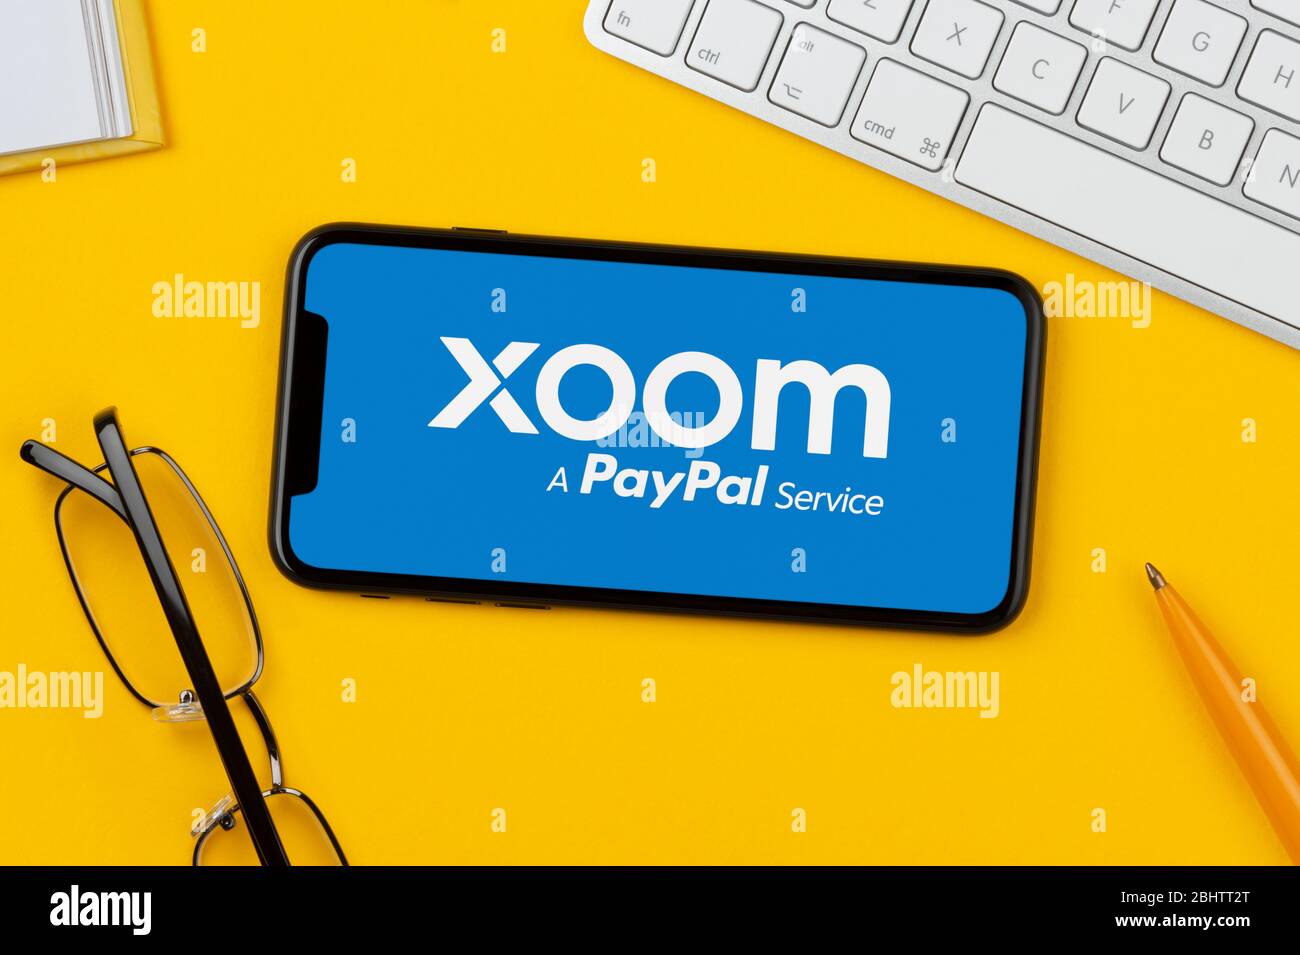 Uno smartphone con il logo Xoom è posizionato su uno sfondo giallo insieme a tastiera, occhiali, penna e libro (solo per uso editoriale). Foto Stock